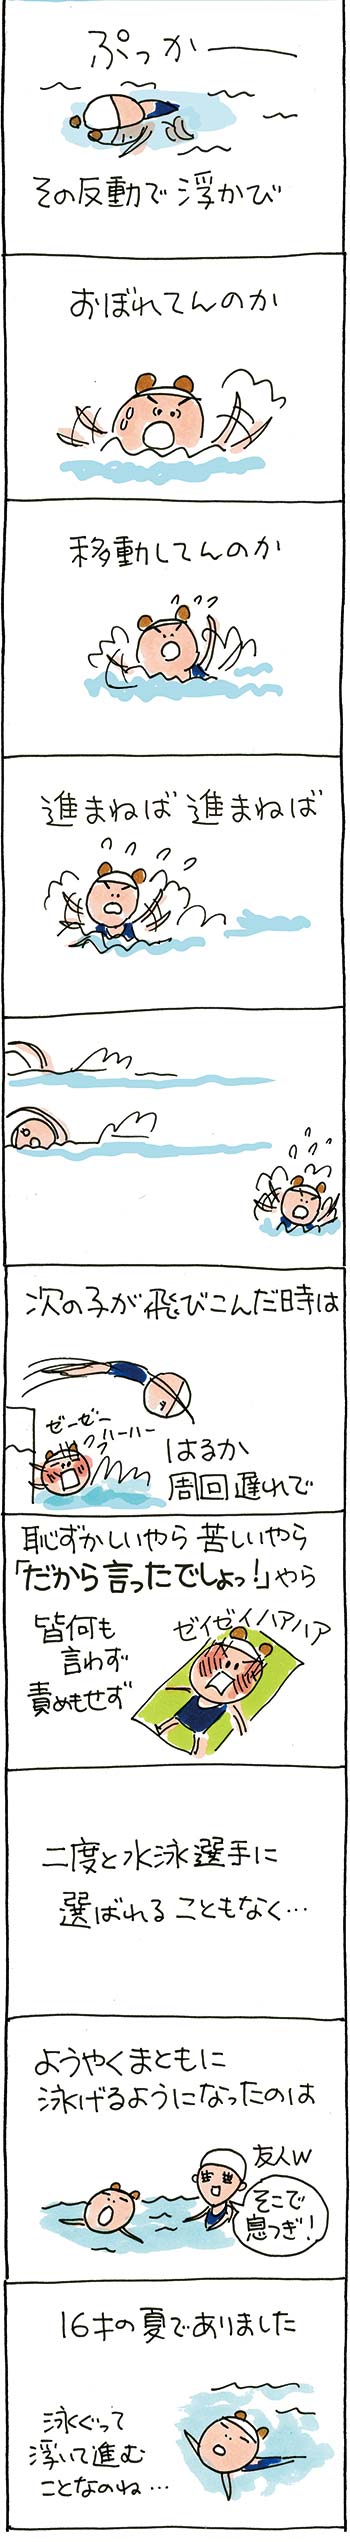 水泳大会02